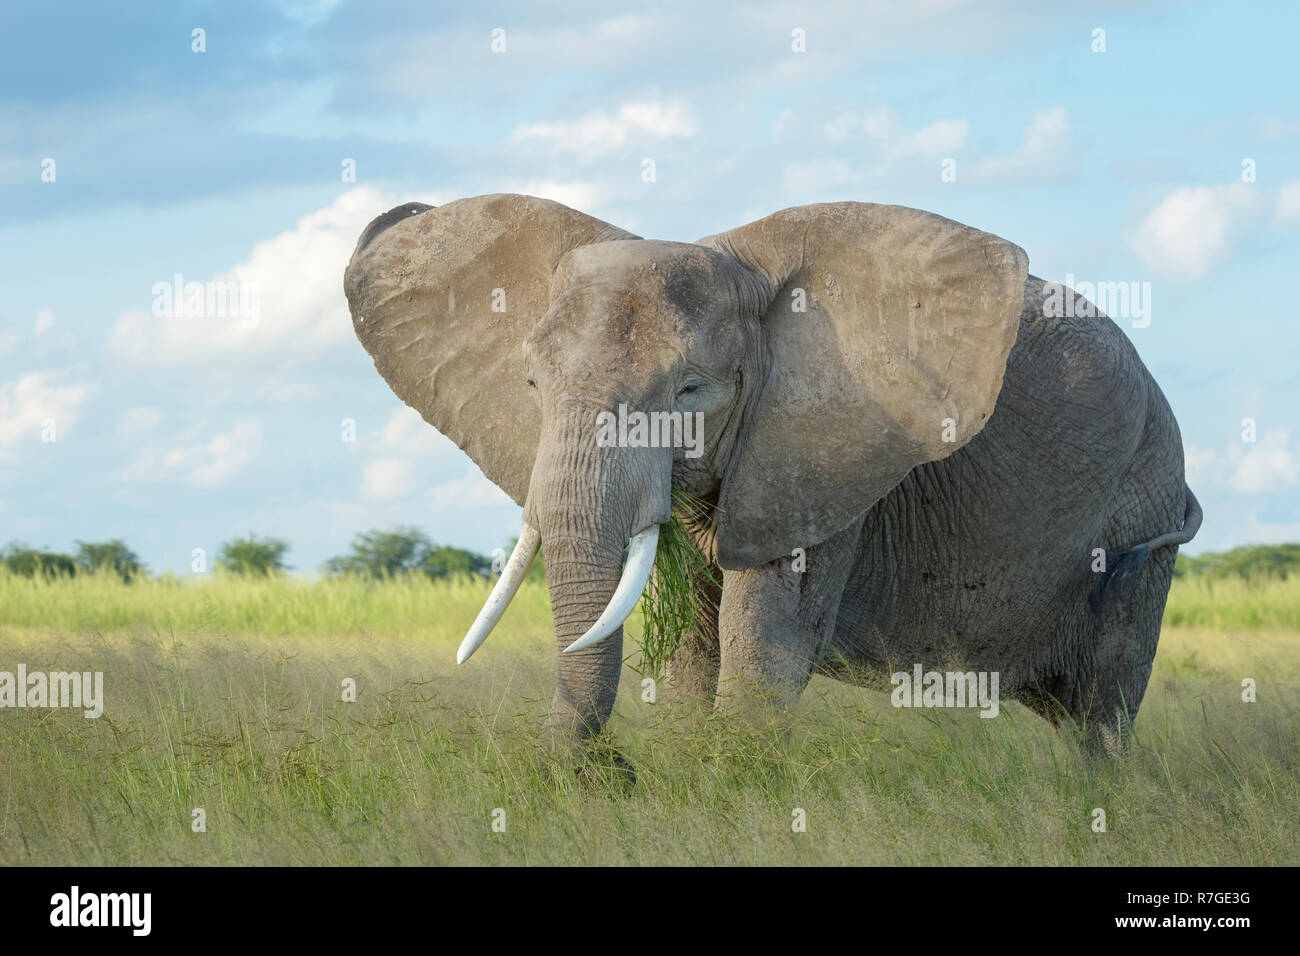 African elephant (Loxodonta africana) feeding on grass, Amboseli national park, Kenya. Stock Photo